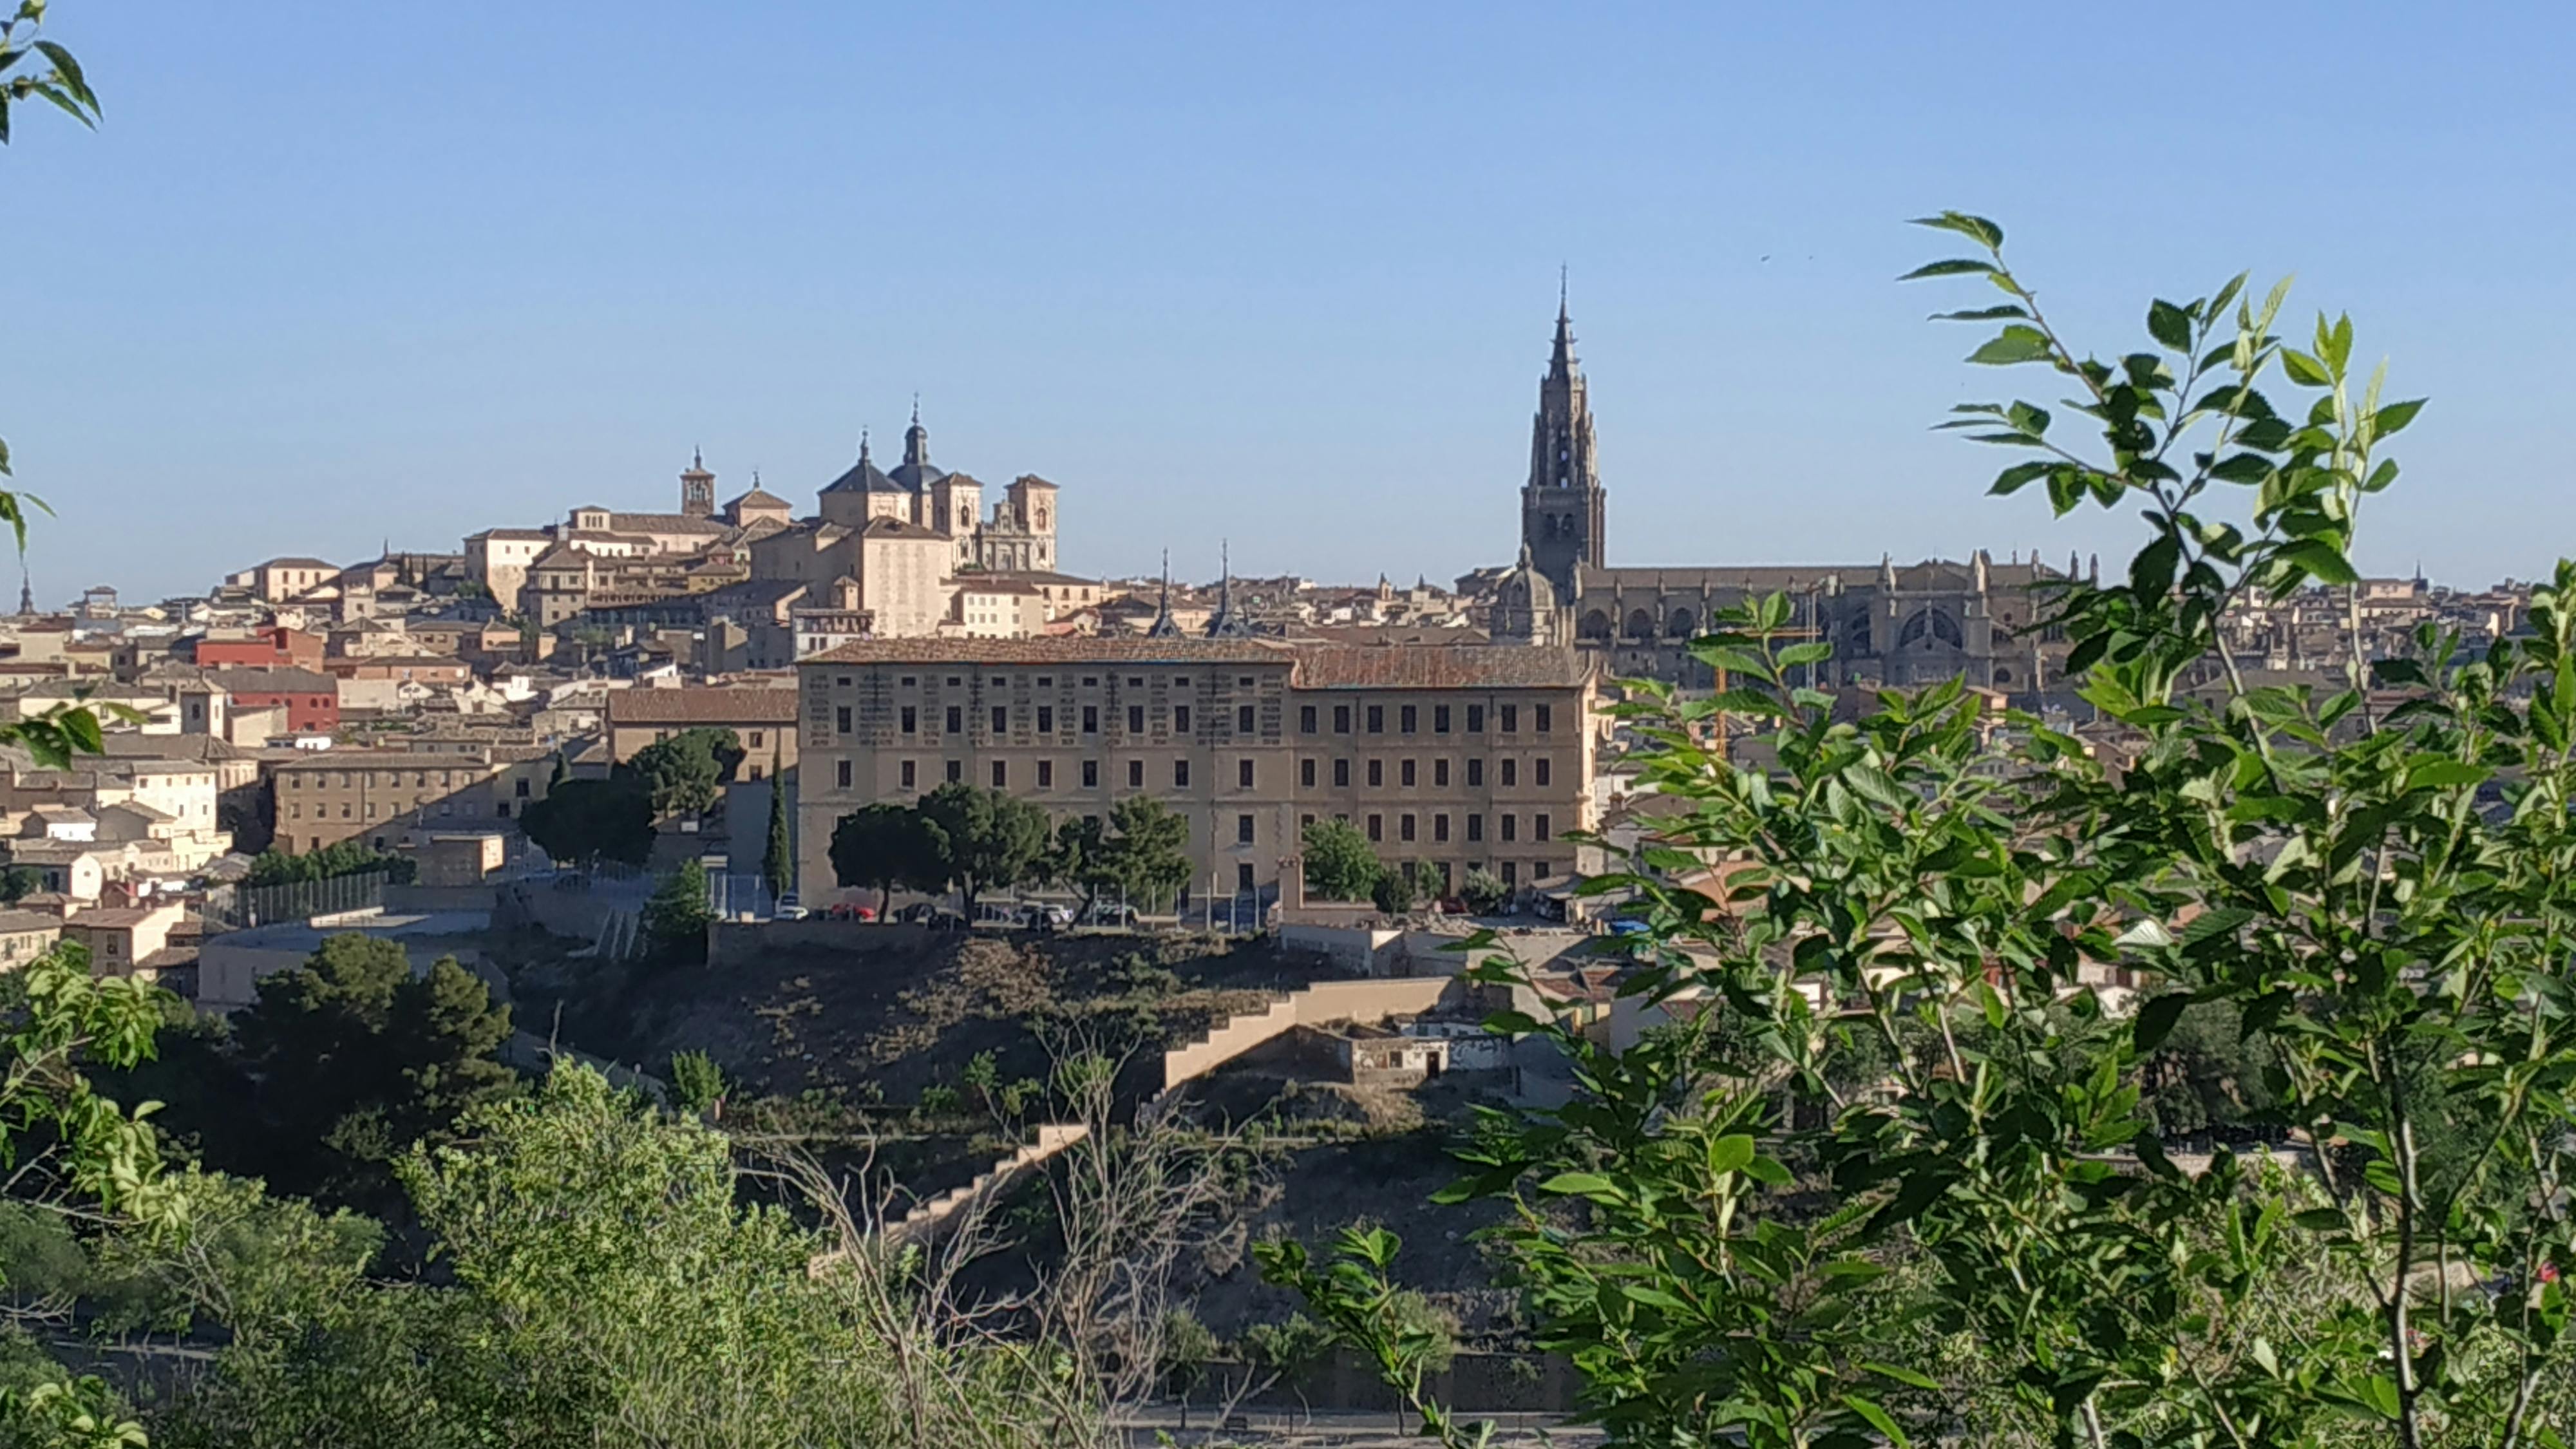 Excursión completa a Toledo desde Madrid en autobús